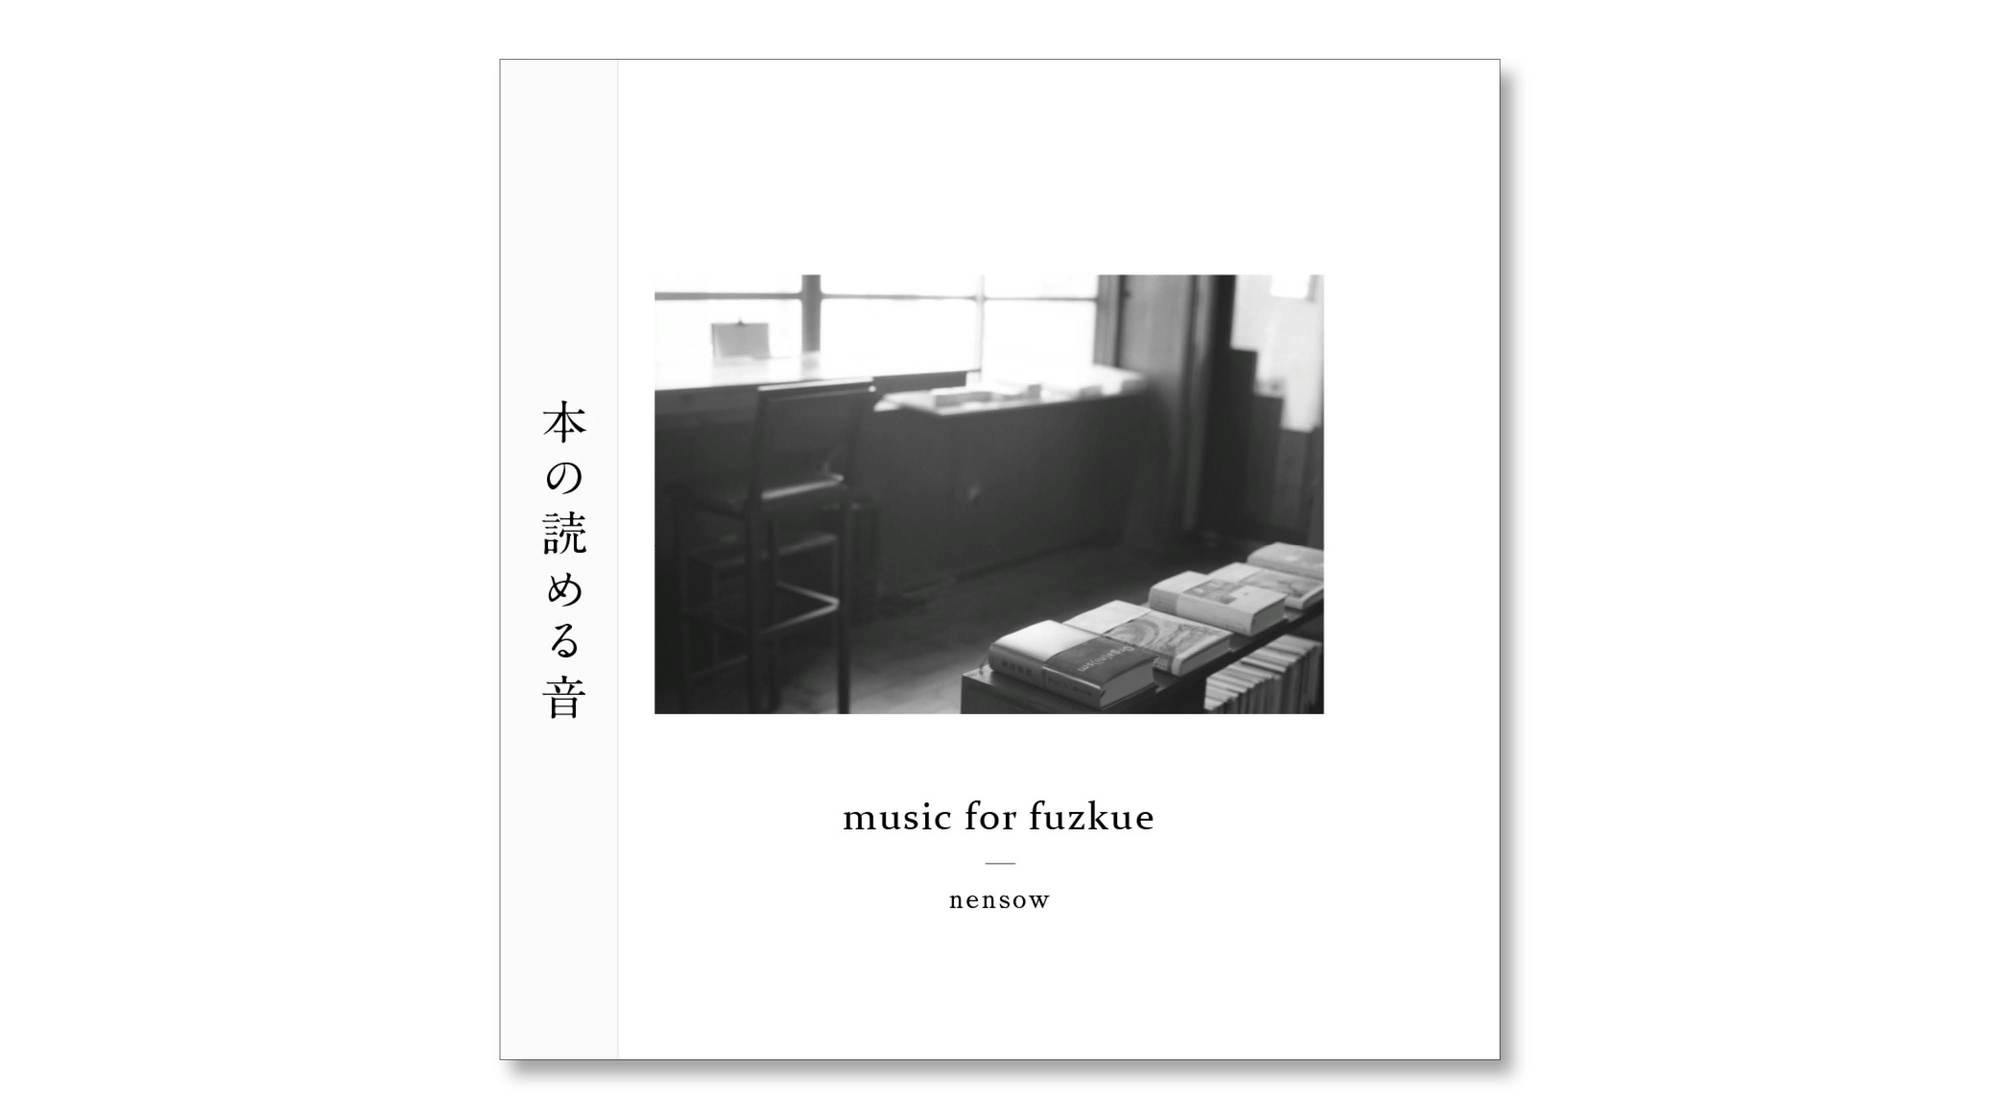 読書の時間のための音楽『music for fuzkue』CD版 発売のお知らせ